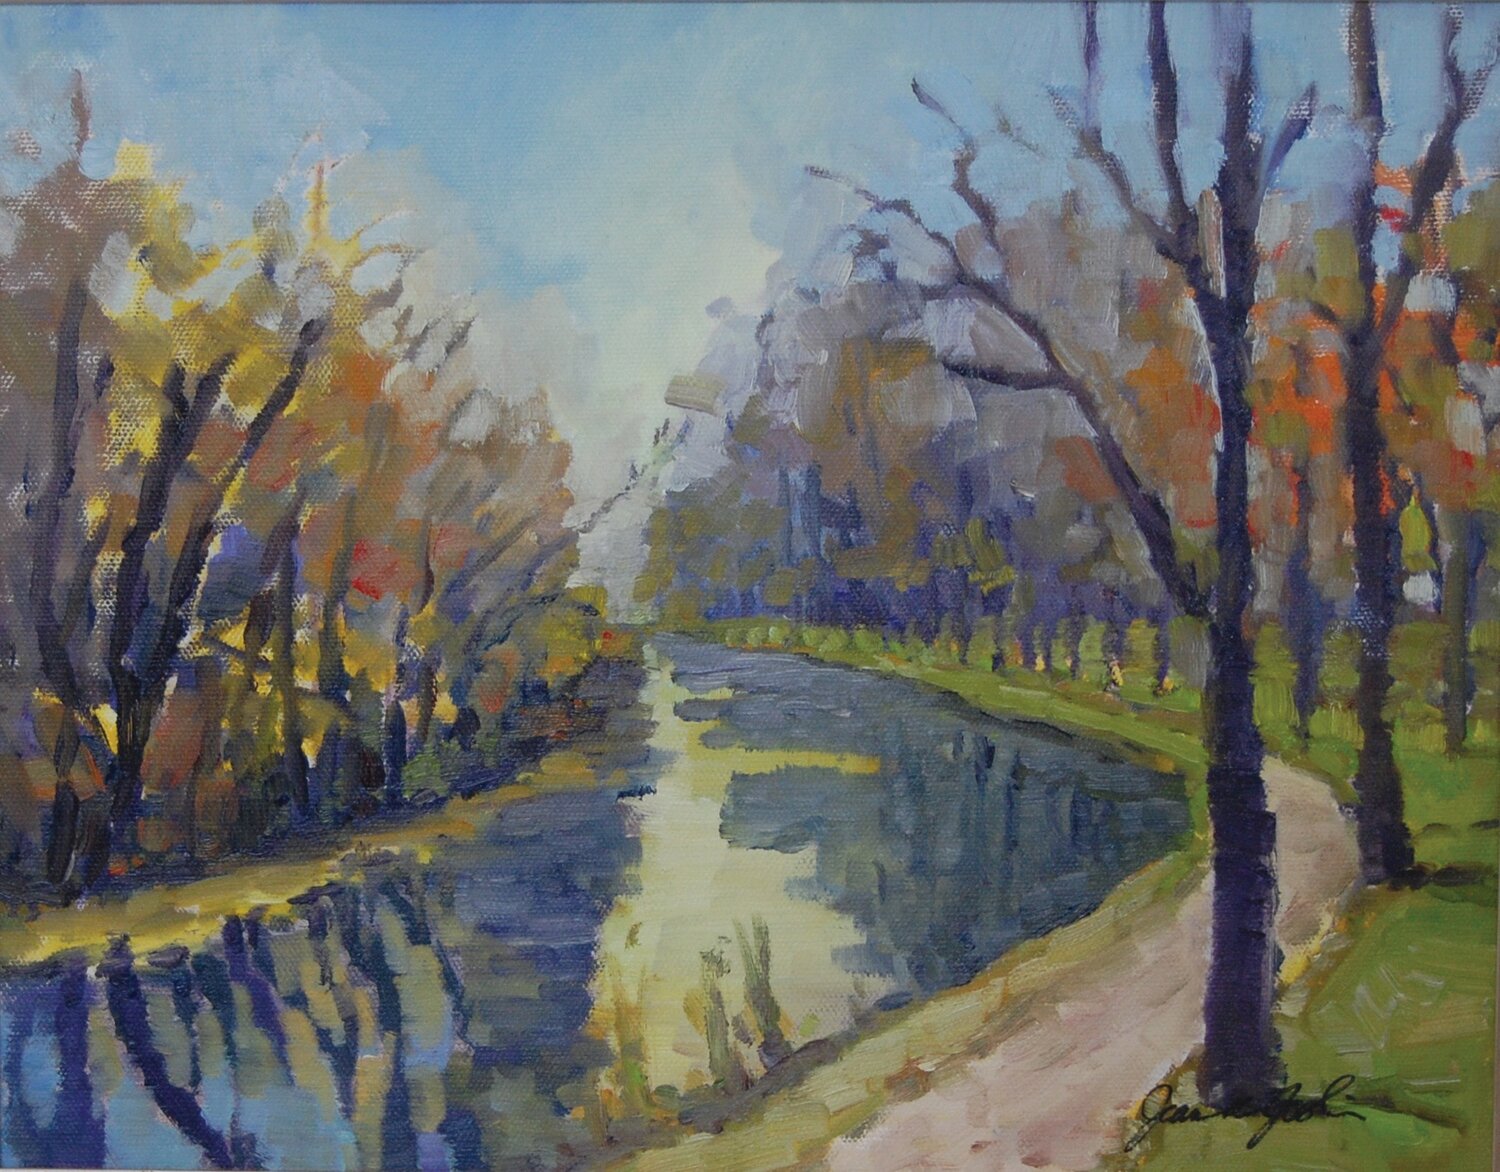 “On the Canal” is by Artsbridge artist Jean Joslin.